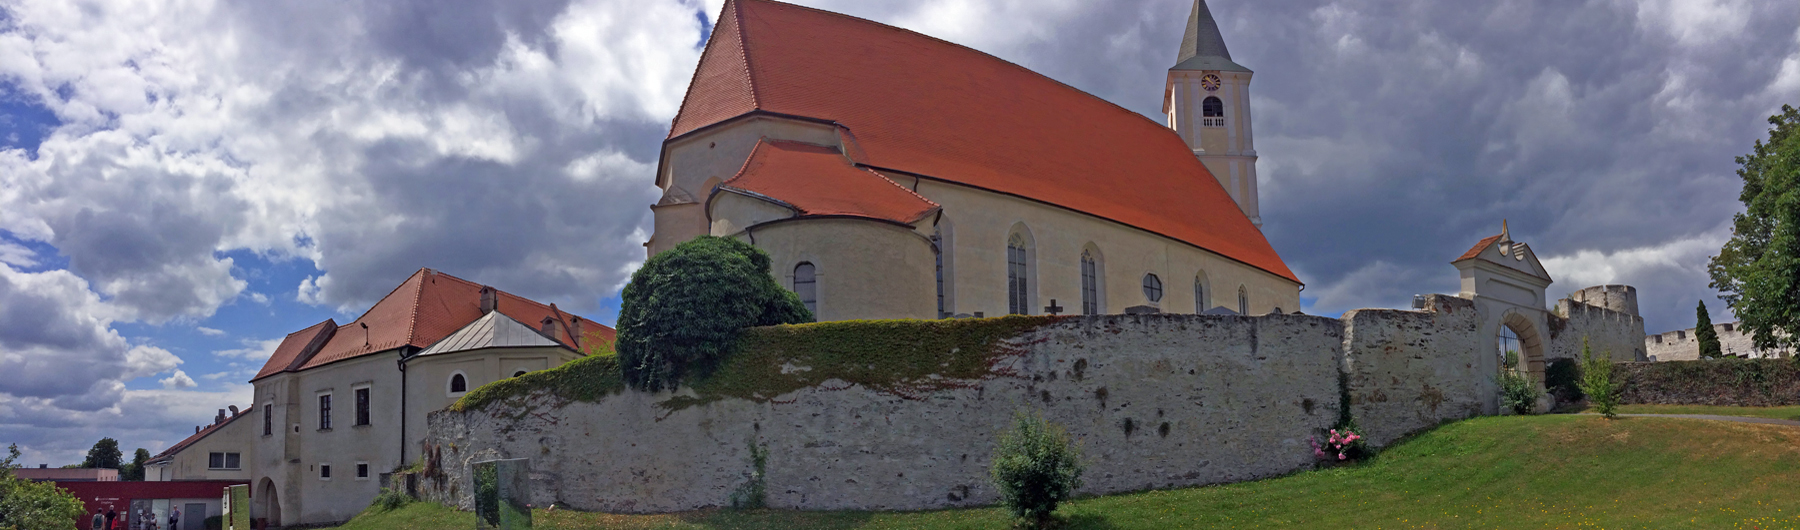 Kloster Pernegg von aussen © Kloster Pernegg